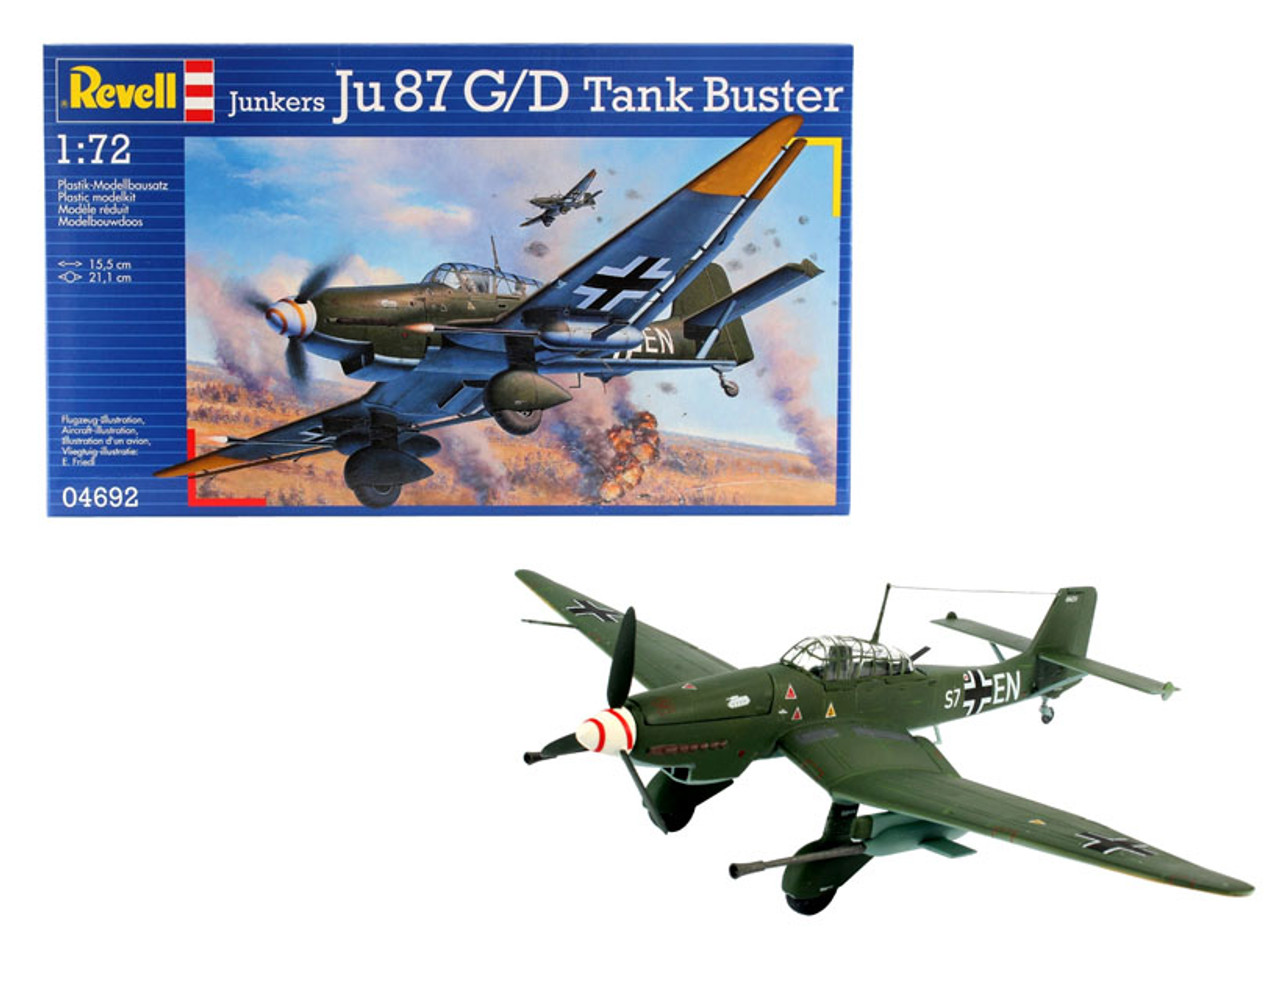 Revell 04692 1/72 Junkers Ju 87 G/D Tank Buster Plastic Model Kit